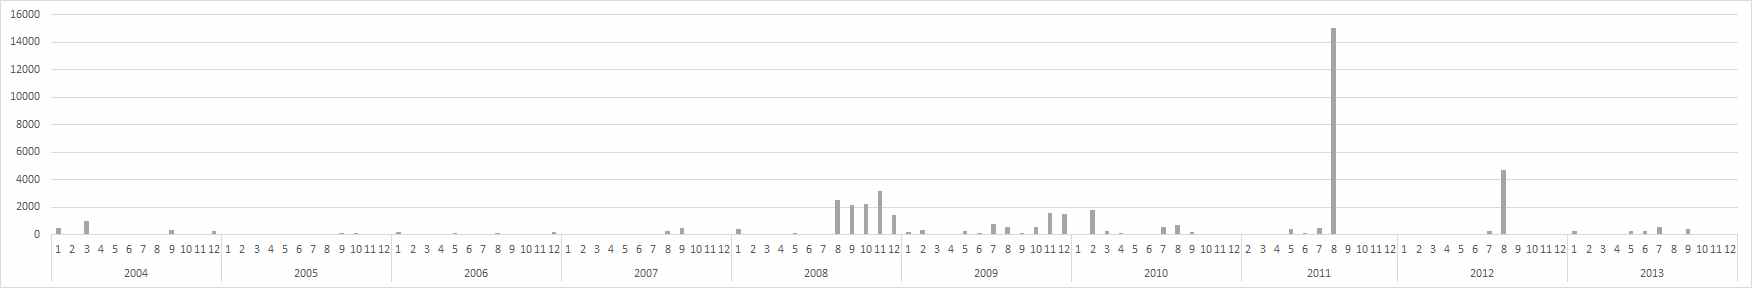 환경부 수질측정망 (구의)의 최근 10년간 분원성대장균군 분포